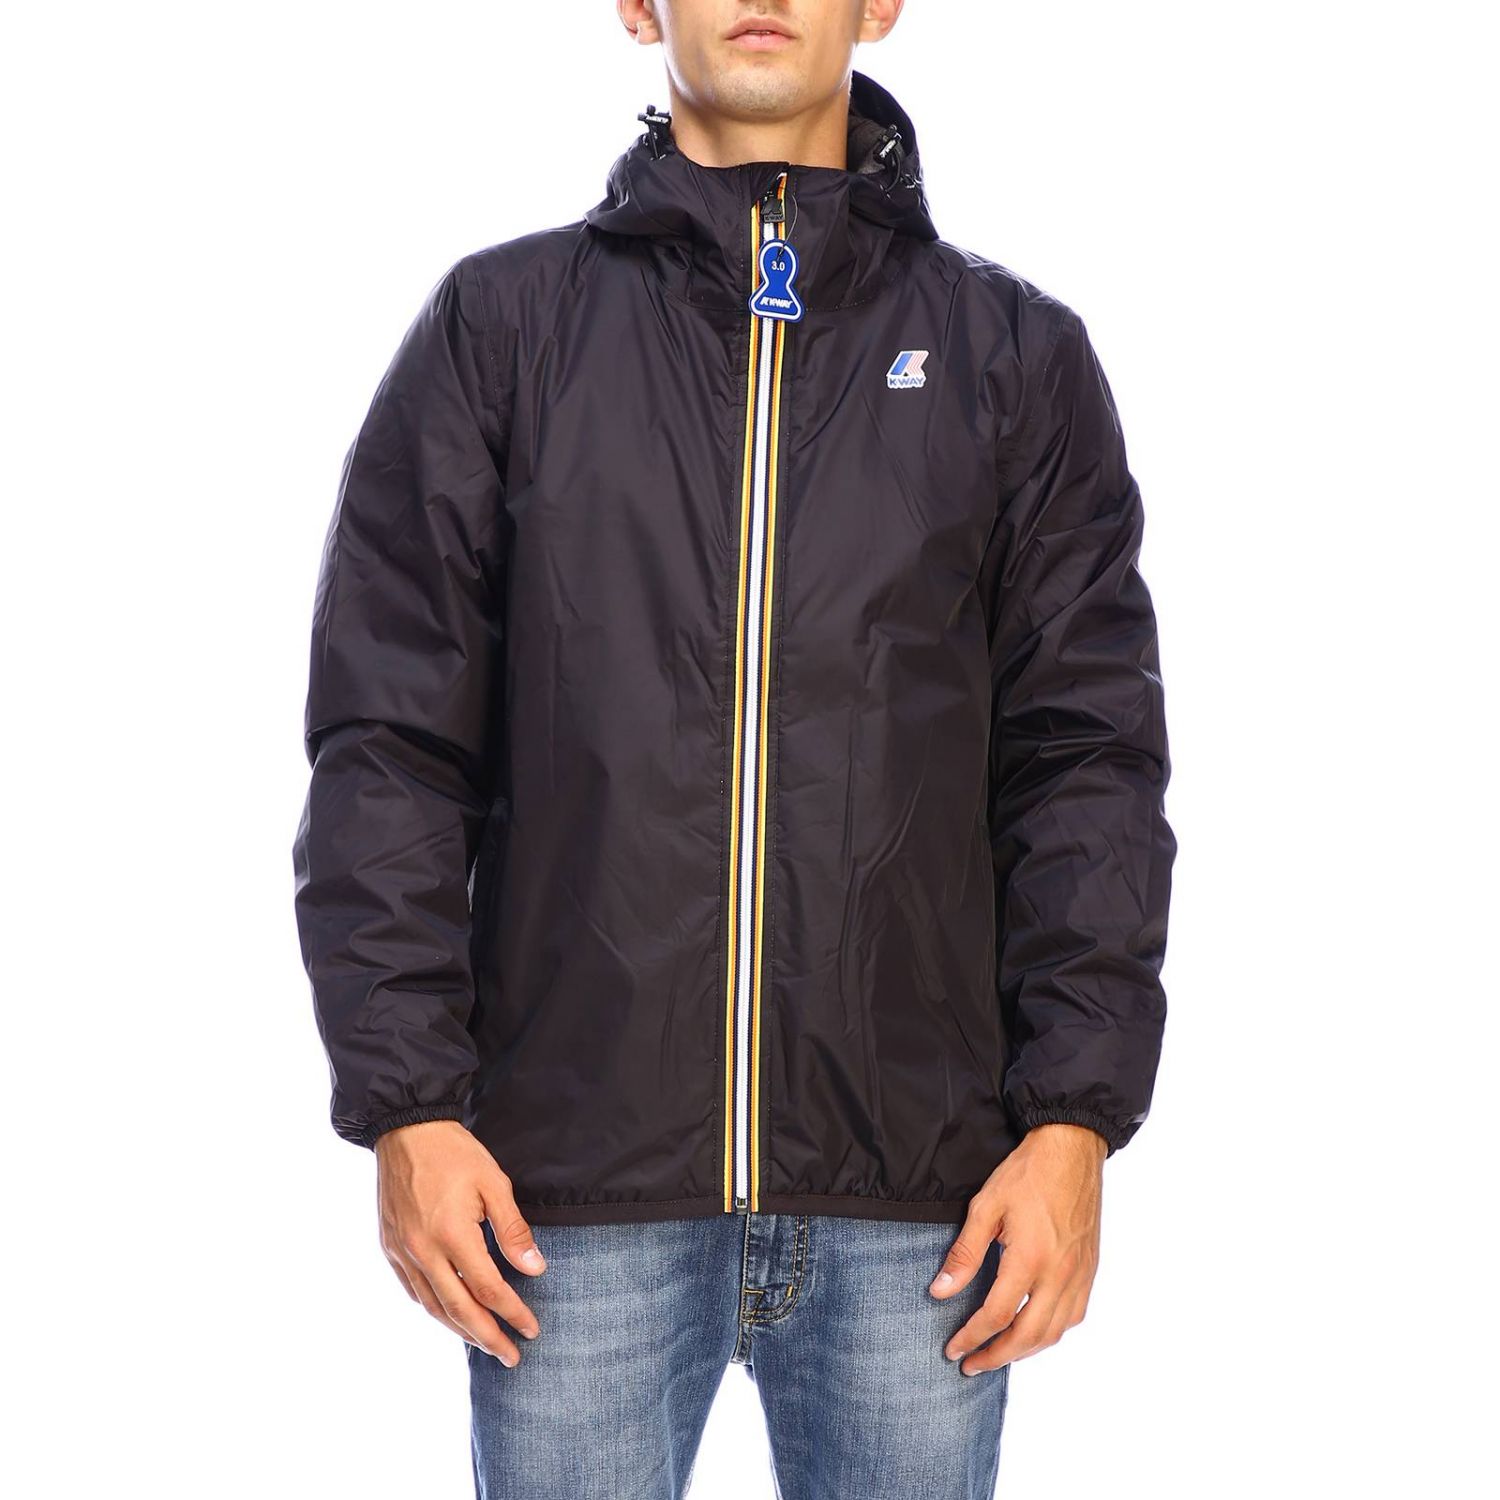 K-Way Outlet: jacket for men - Black | K-Way jacket K00A7N0 online on ...